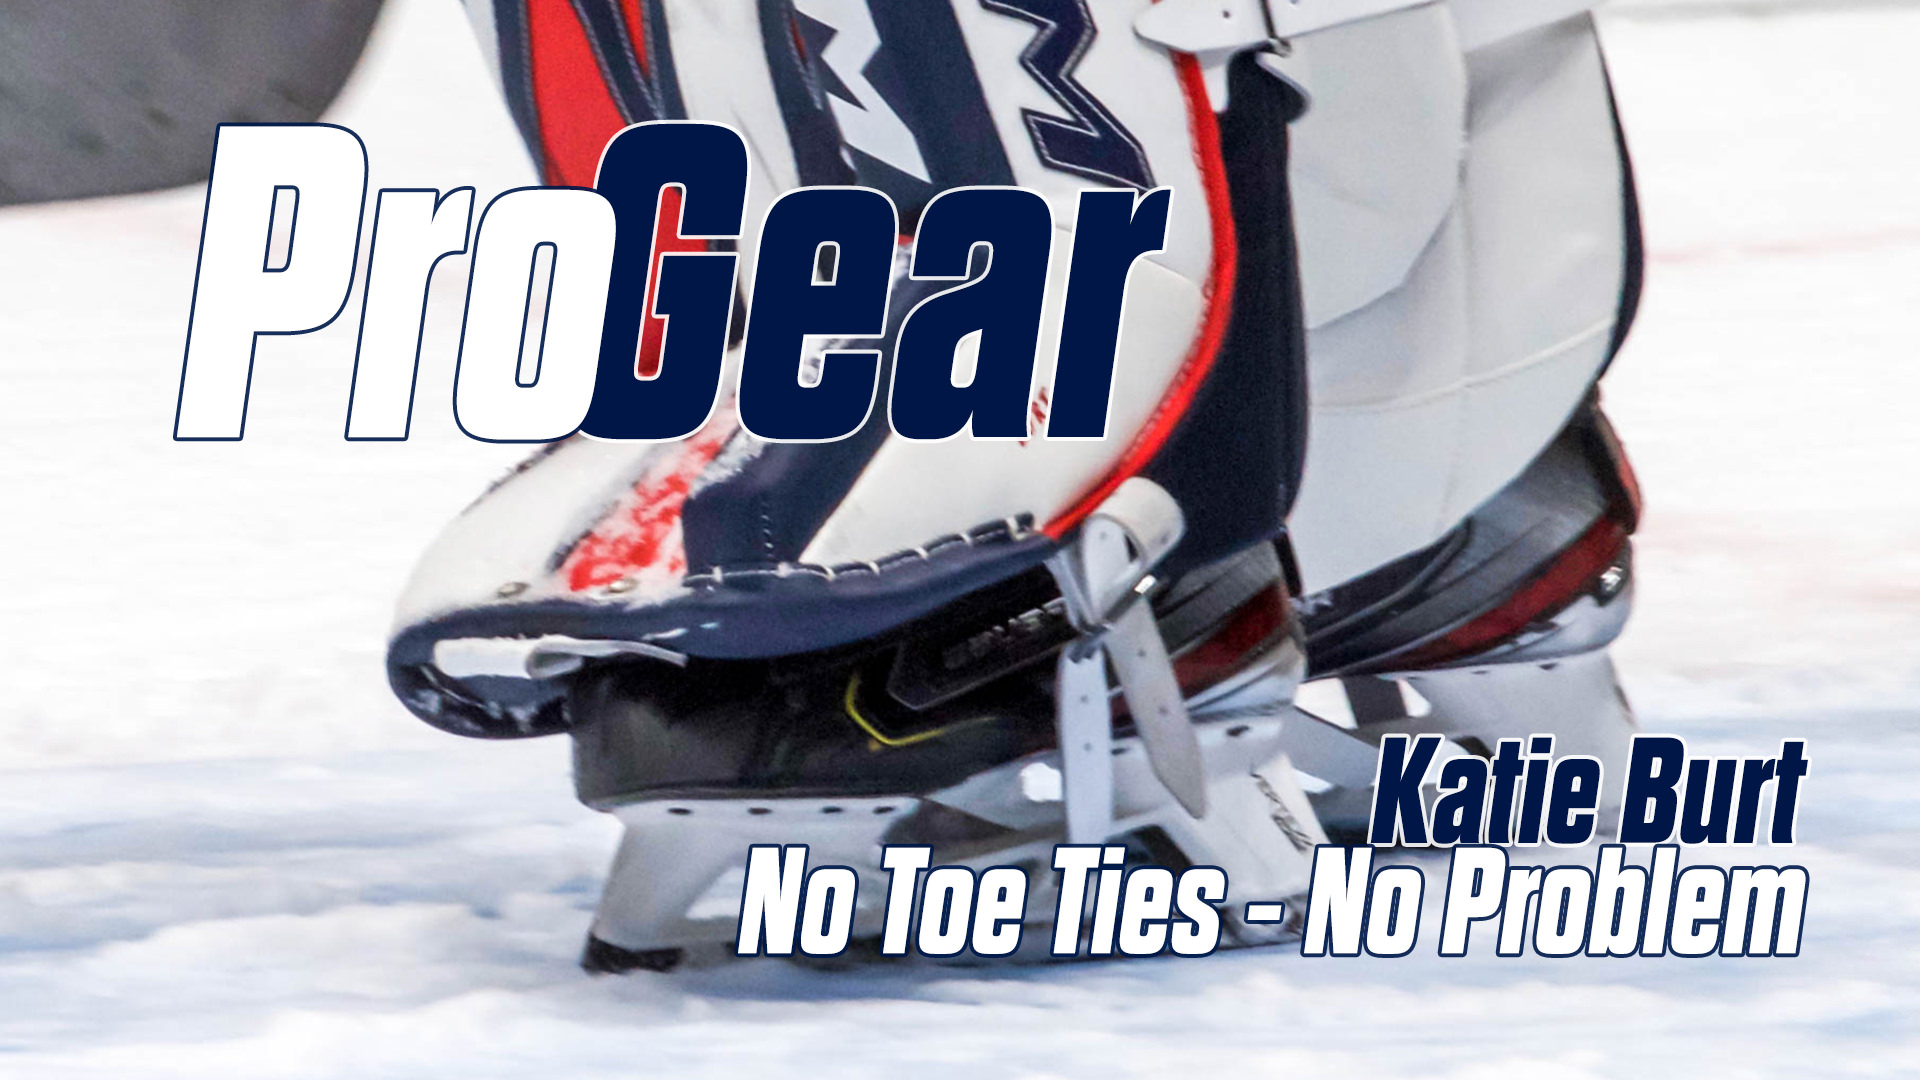 Pro-Gear: No Toe Ties? No Problem – Katie Burt, Team USA